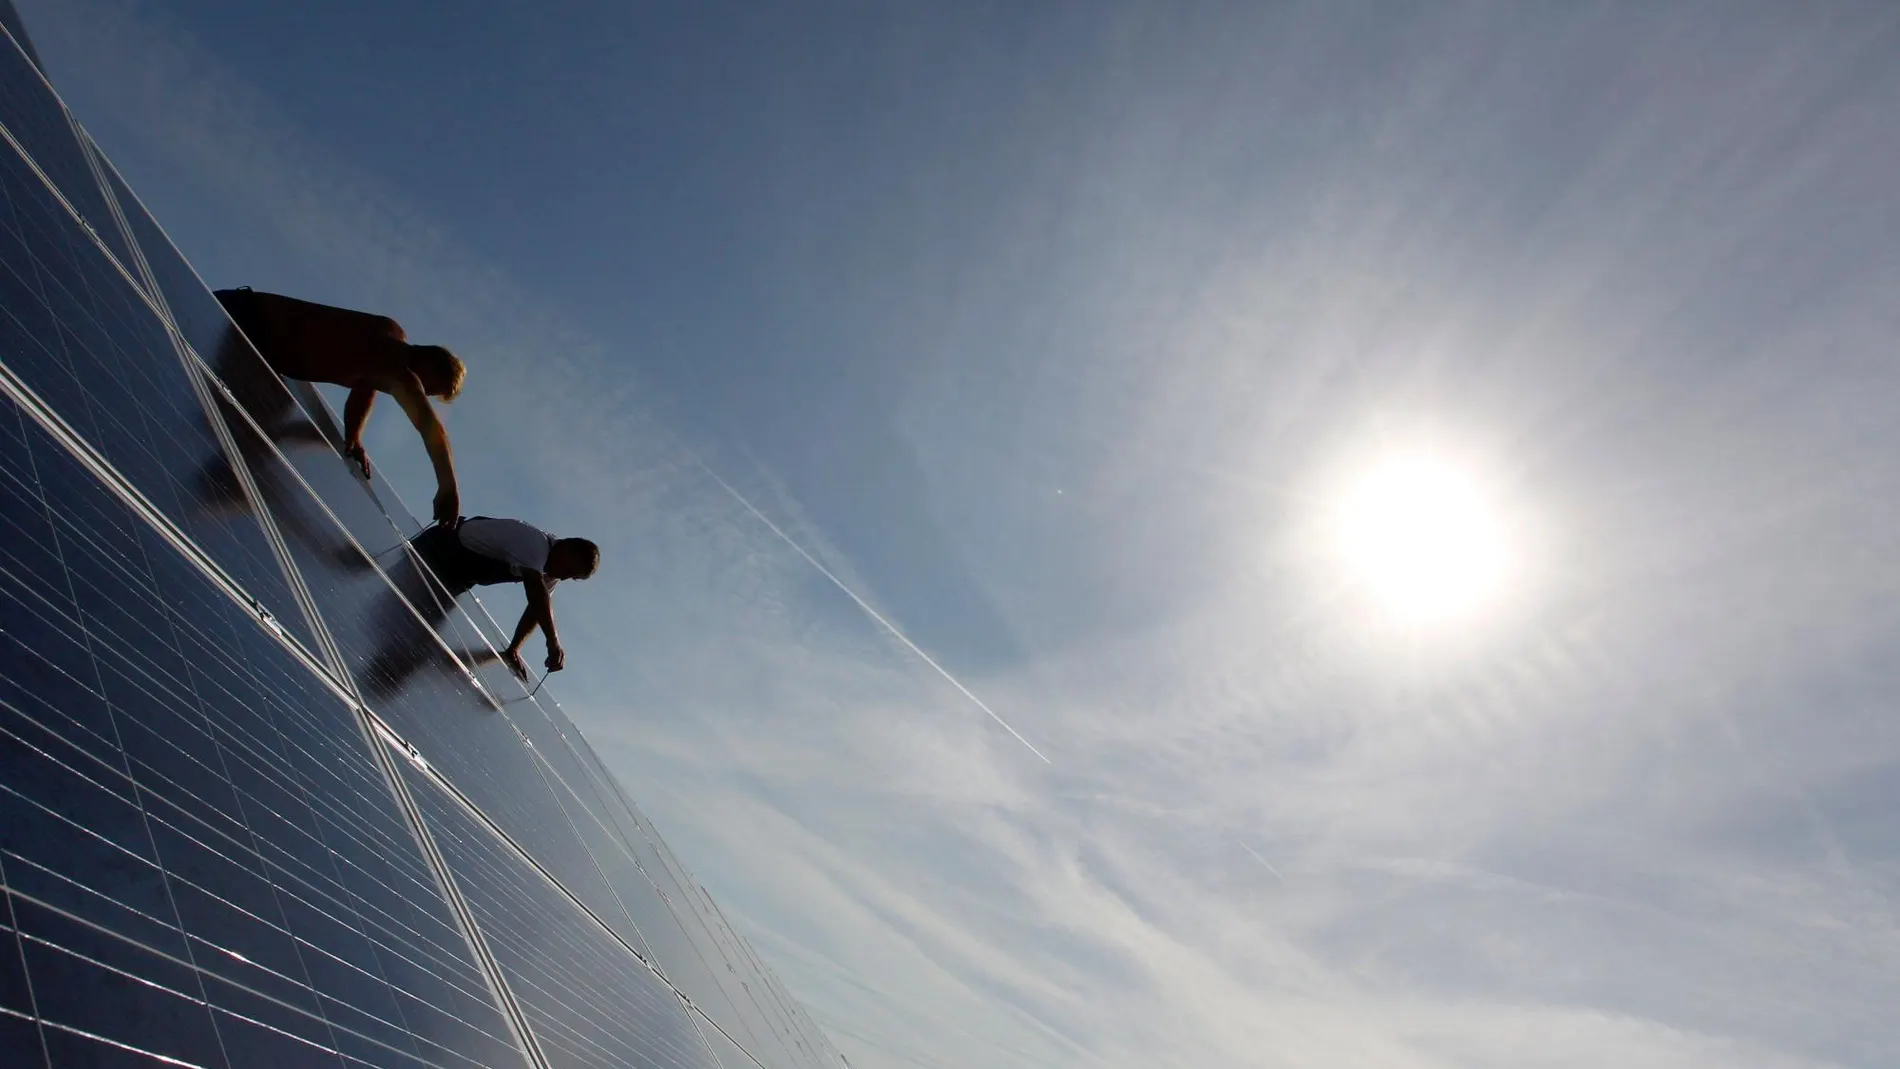 Las placas solares constituyen una manera limpia y cada vez más rentable de obtener energía / Foto: La Razón